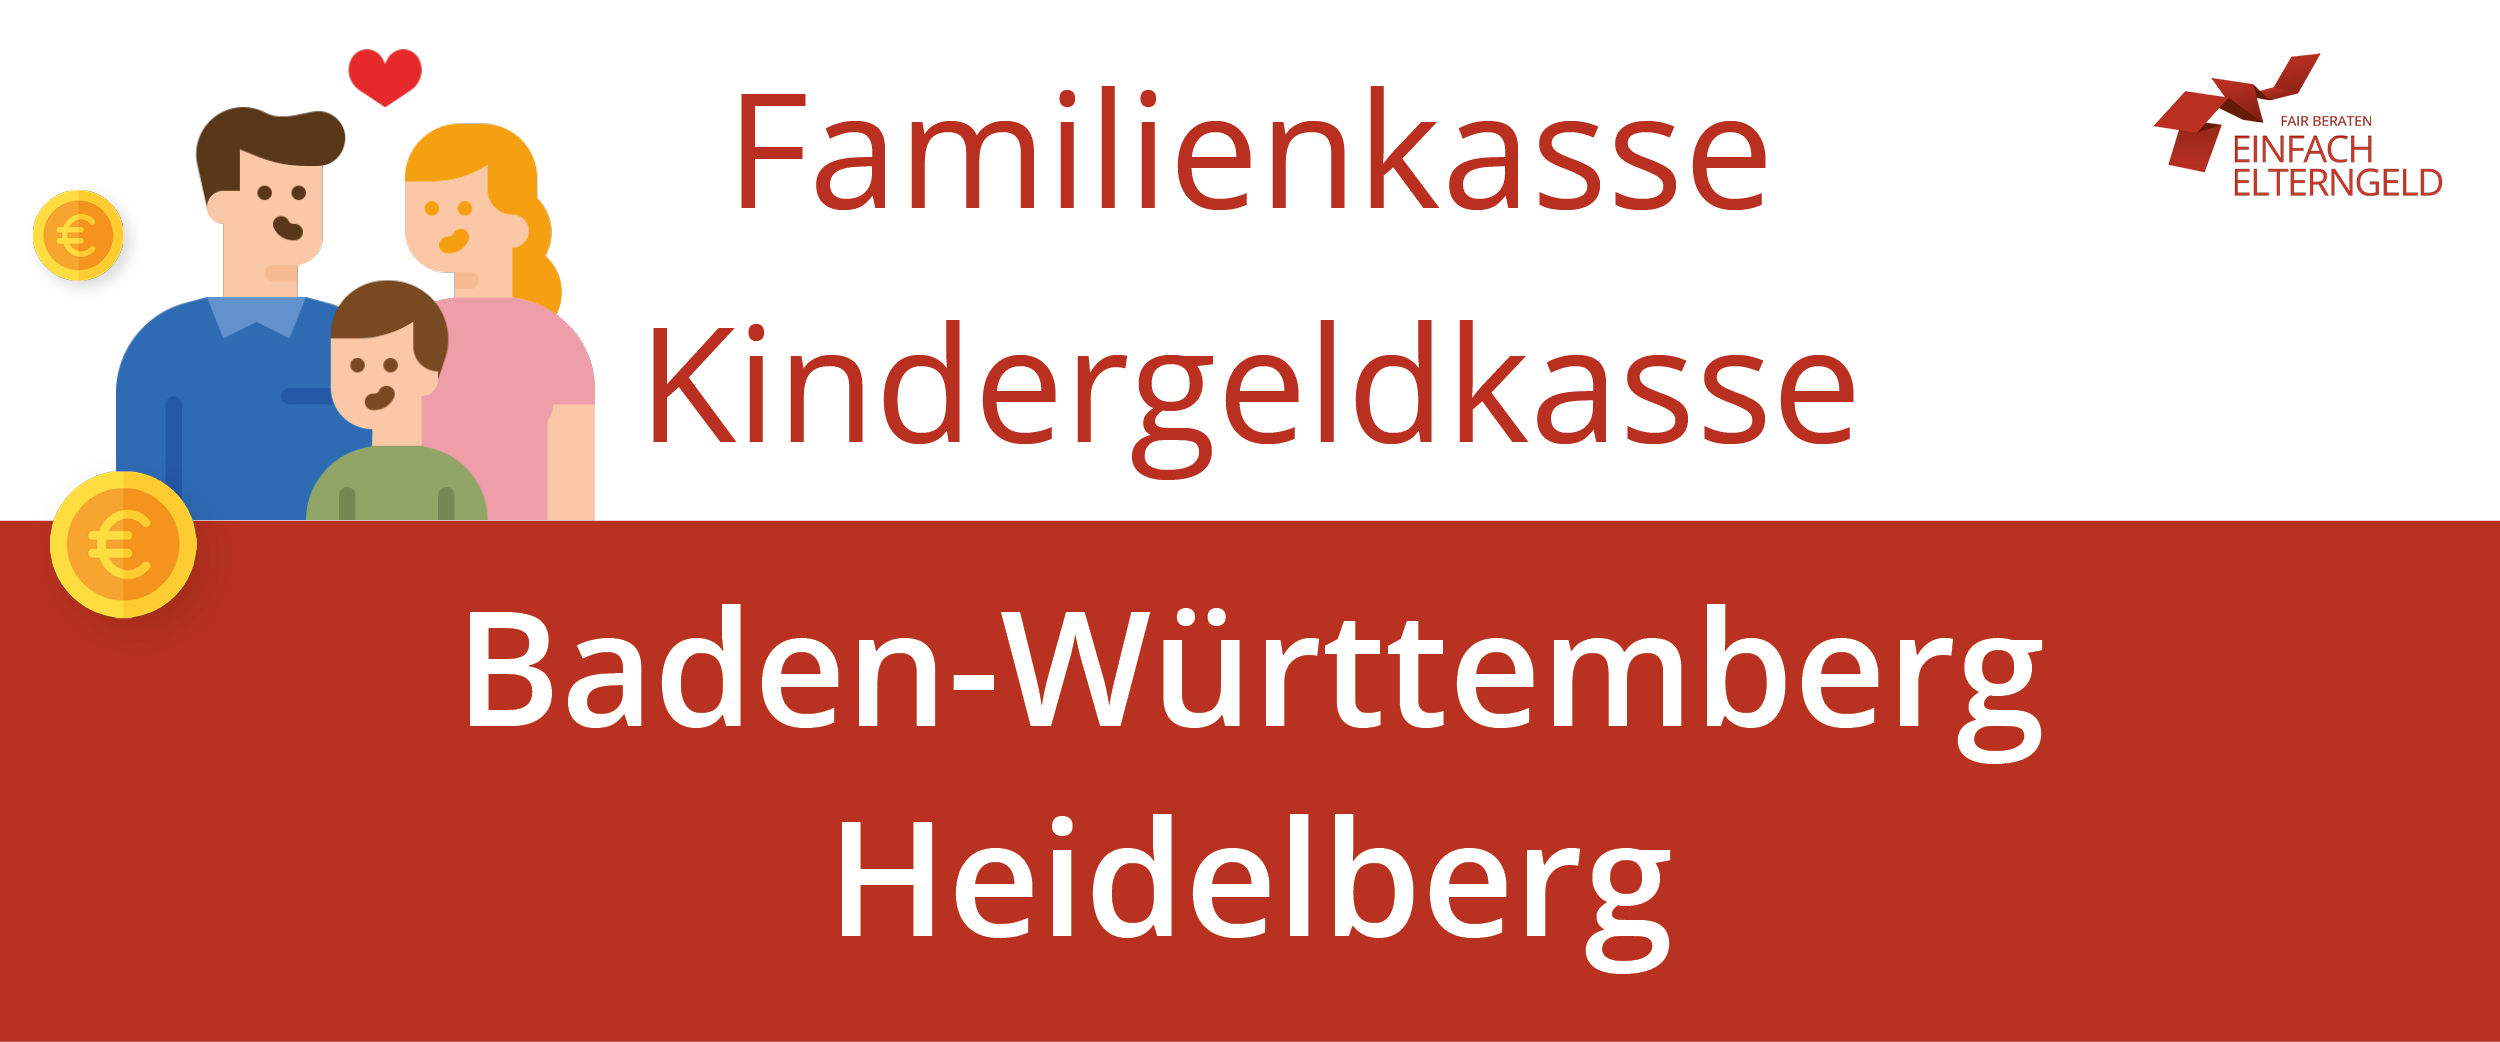 Familienkasse Kindergeldkasse Baden-Württemberg Heidelberg - So erreichen Sie Ihre Familienkasse.